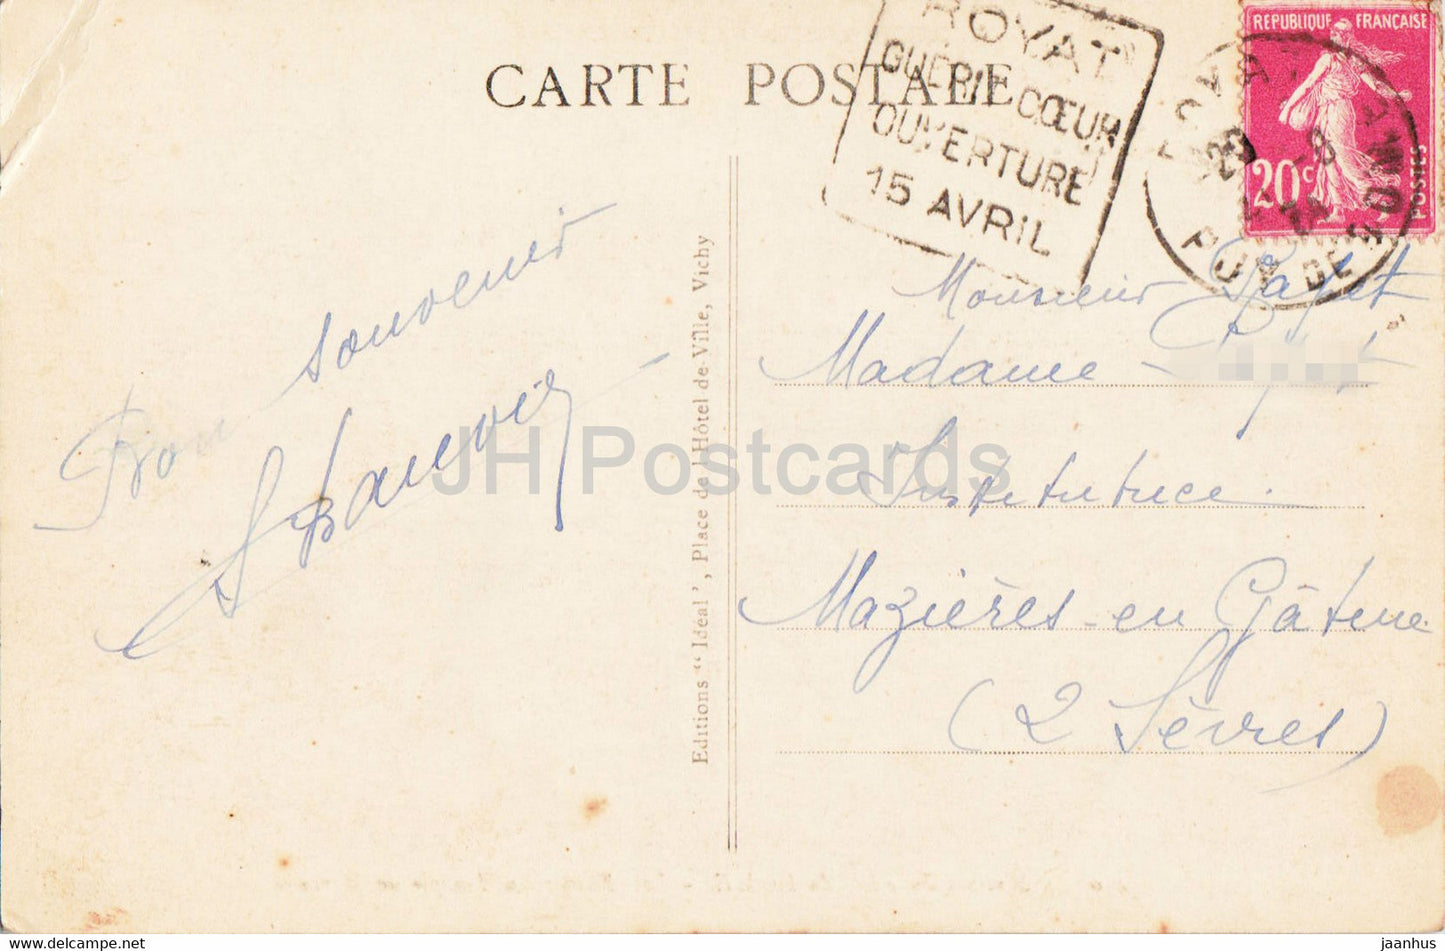 Sommet du Puy de Dôme - Les Ruines du Temple de Mercure - 4304 - carte postale ancienne - 1934 - France - occasion